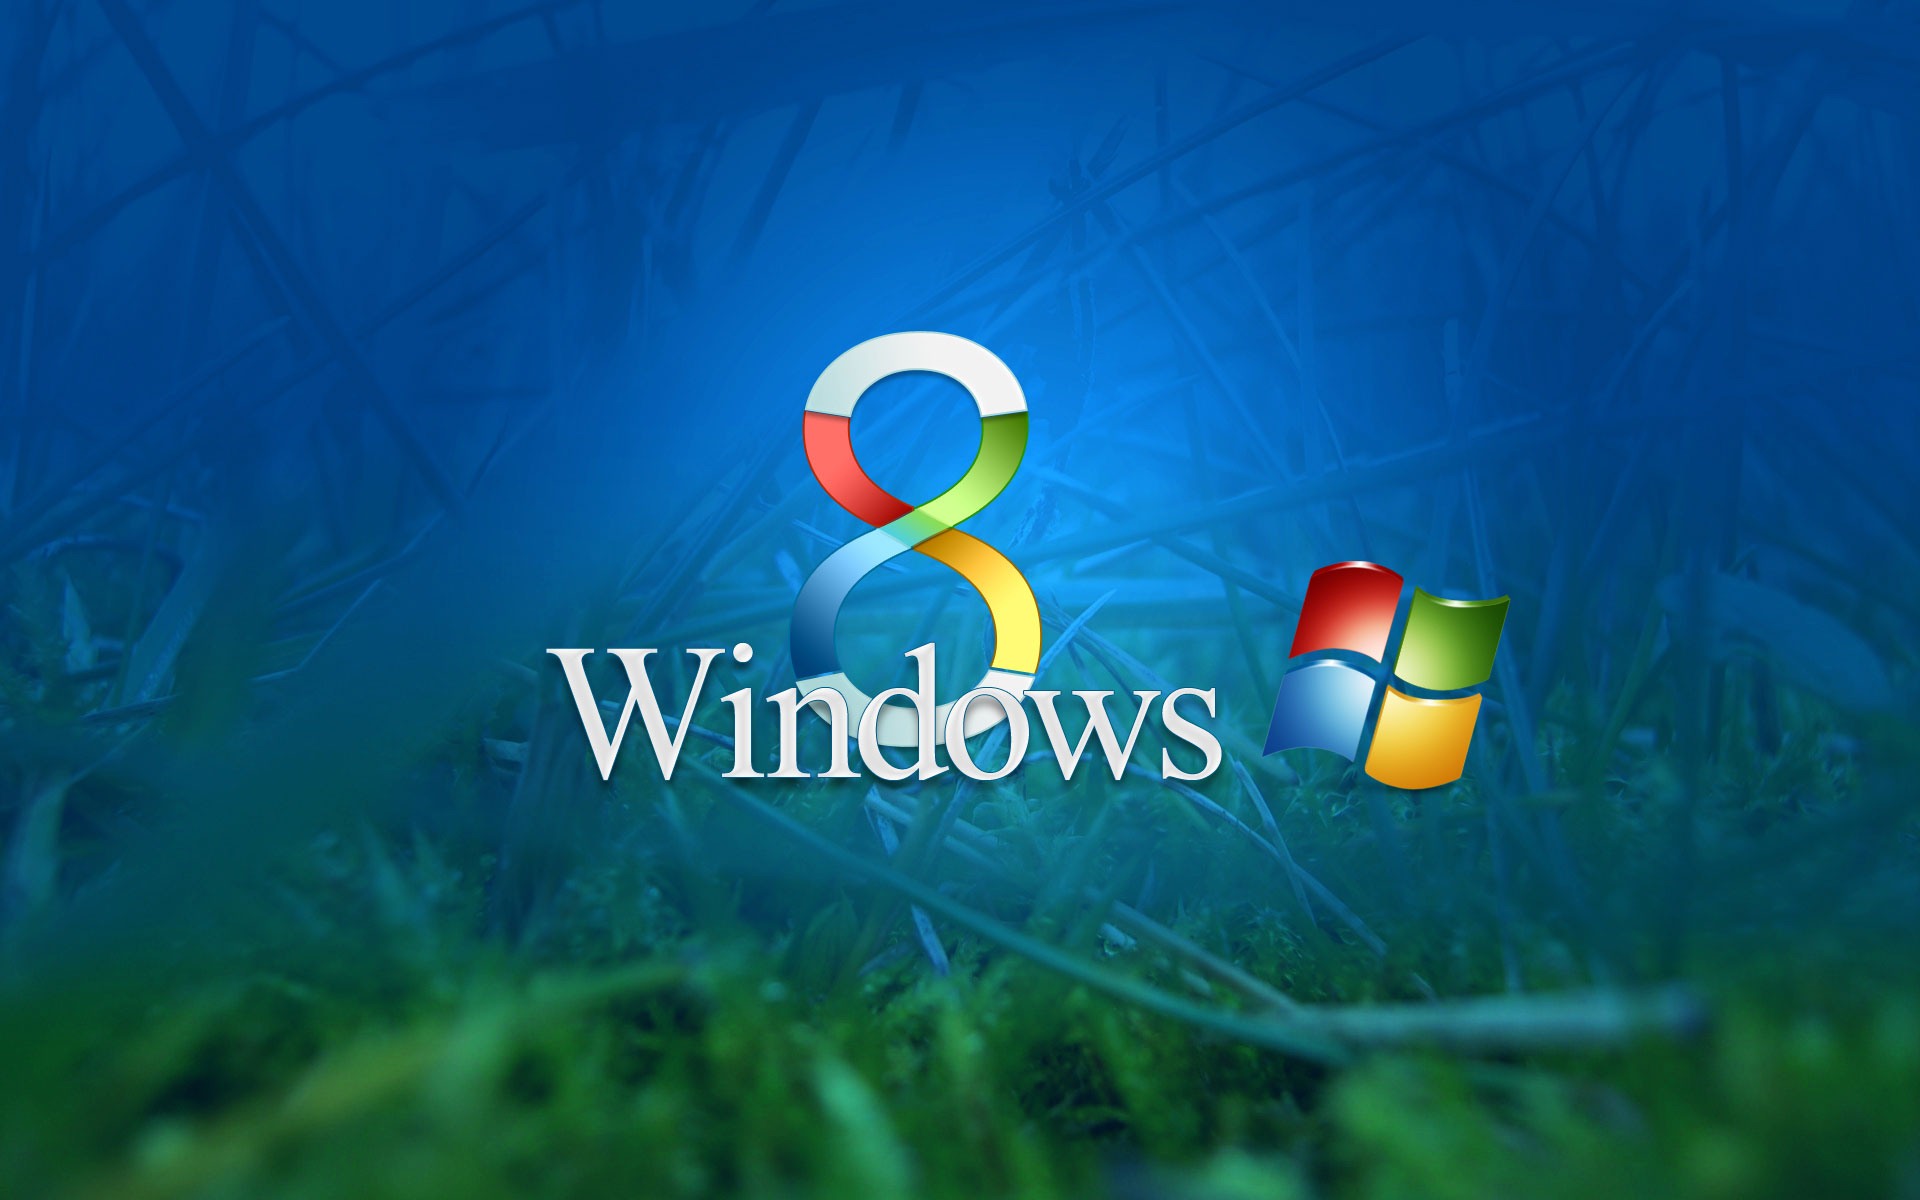 Windows 8 Theme Wallpaper (2) #1 - 1920x1200